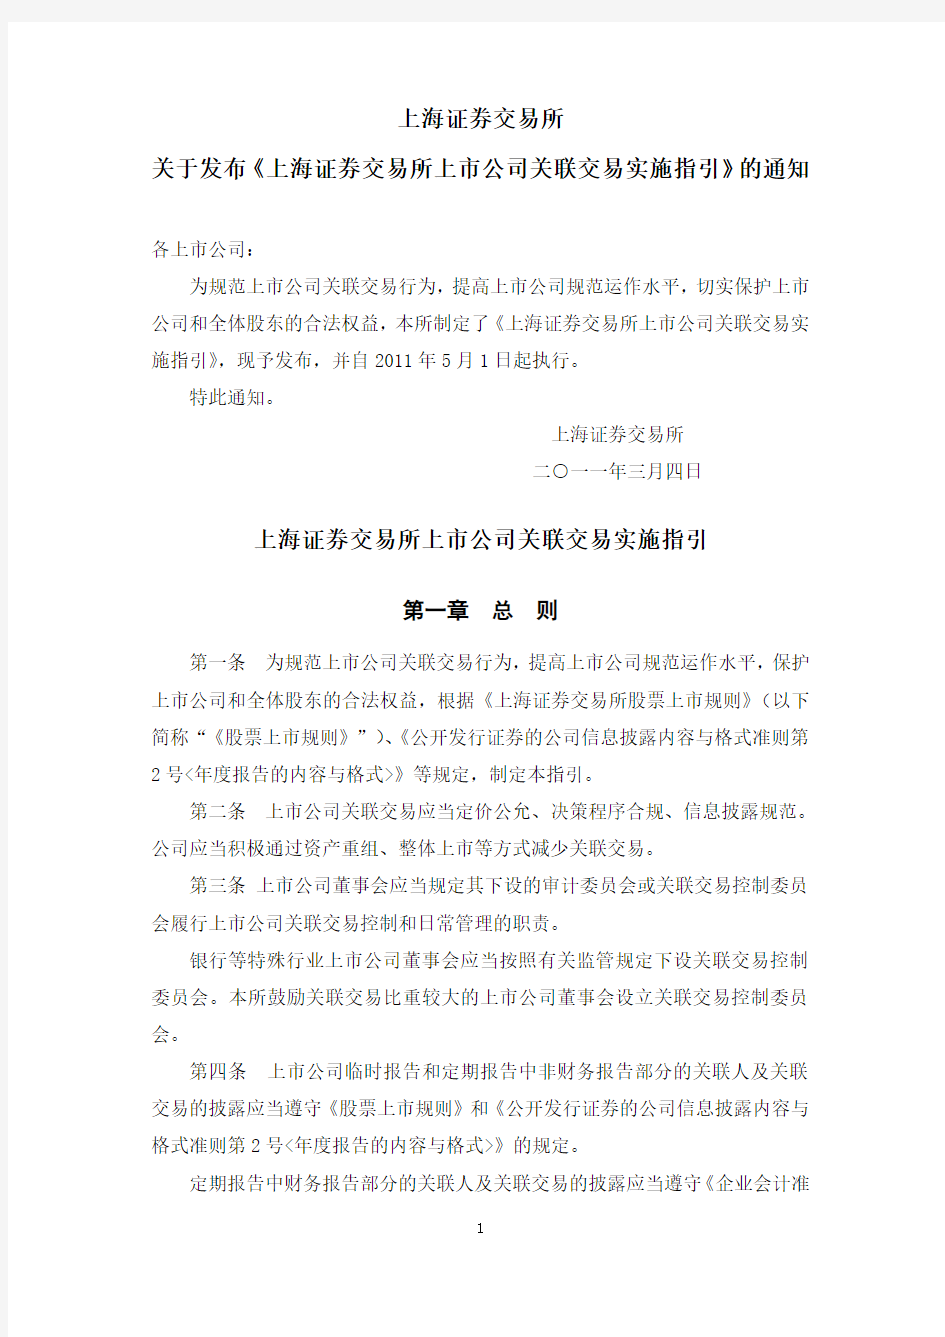 上海证券交易所上市公司关联交易实施指引201134